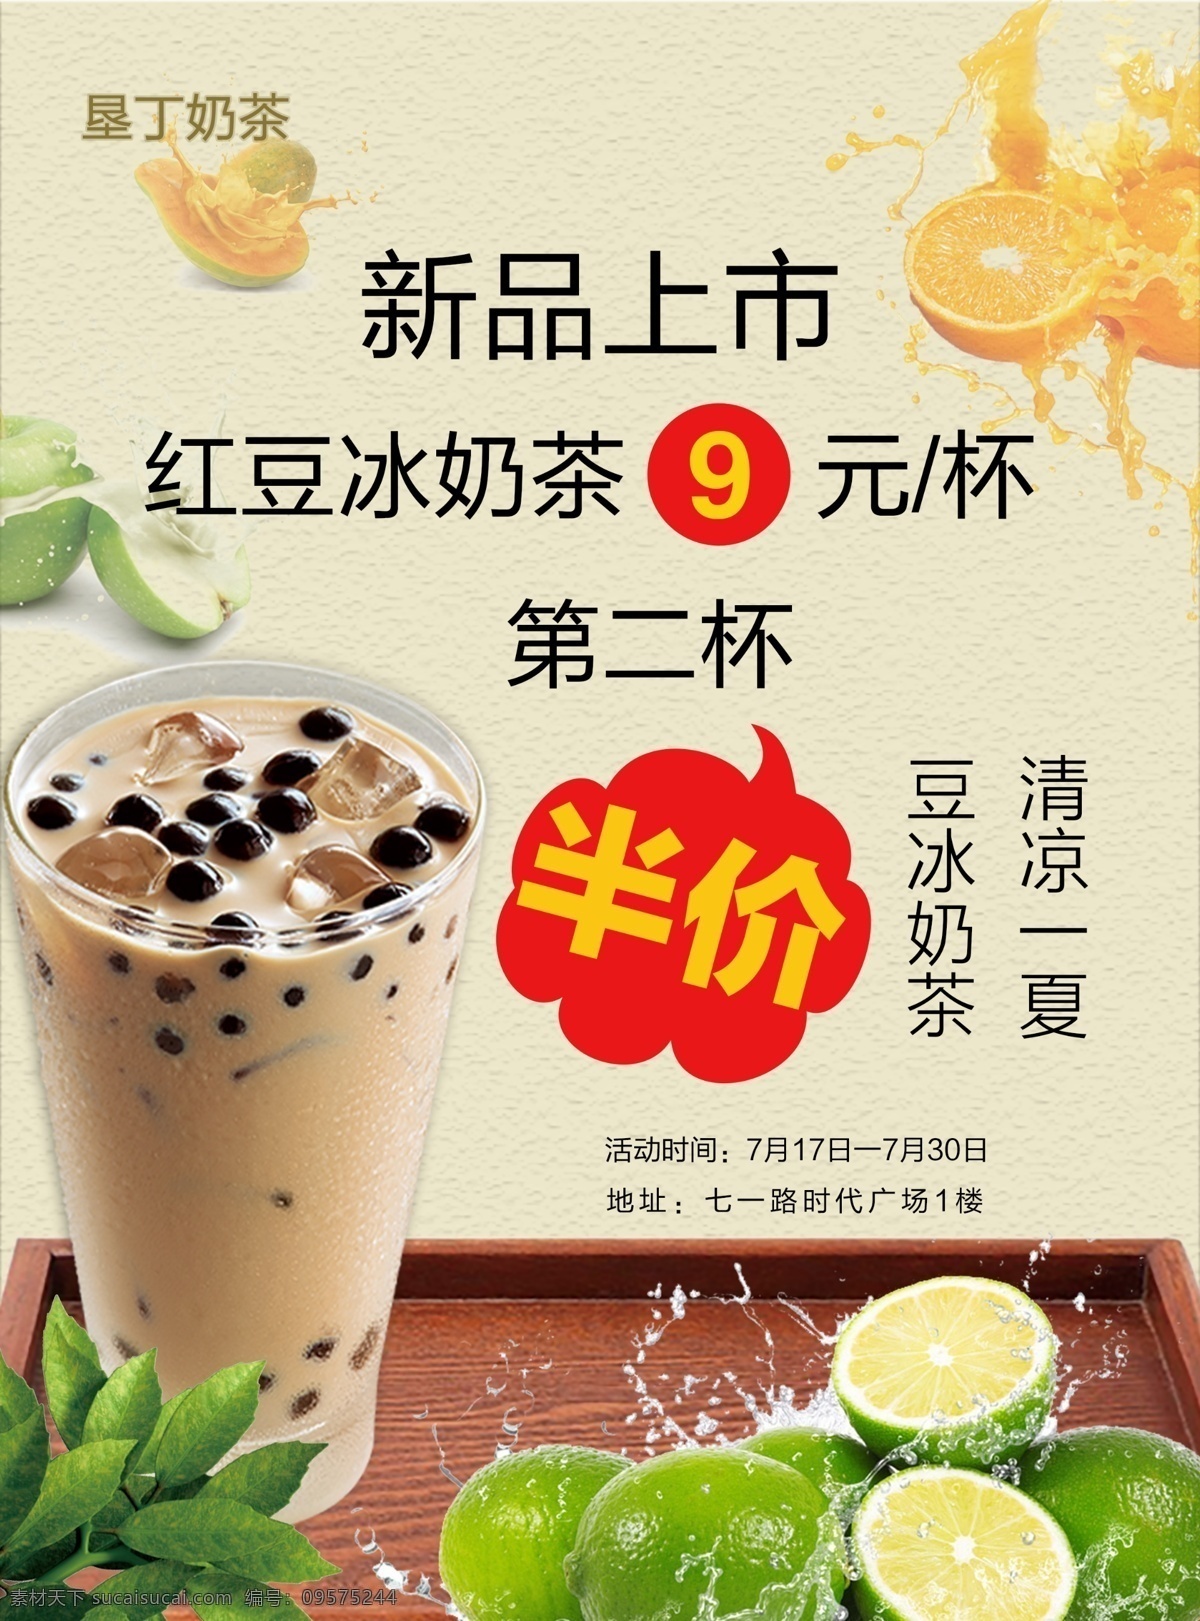 奶茶 新品上市 宣传单 海报 宣传页 平面 美食